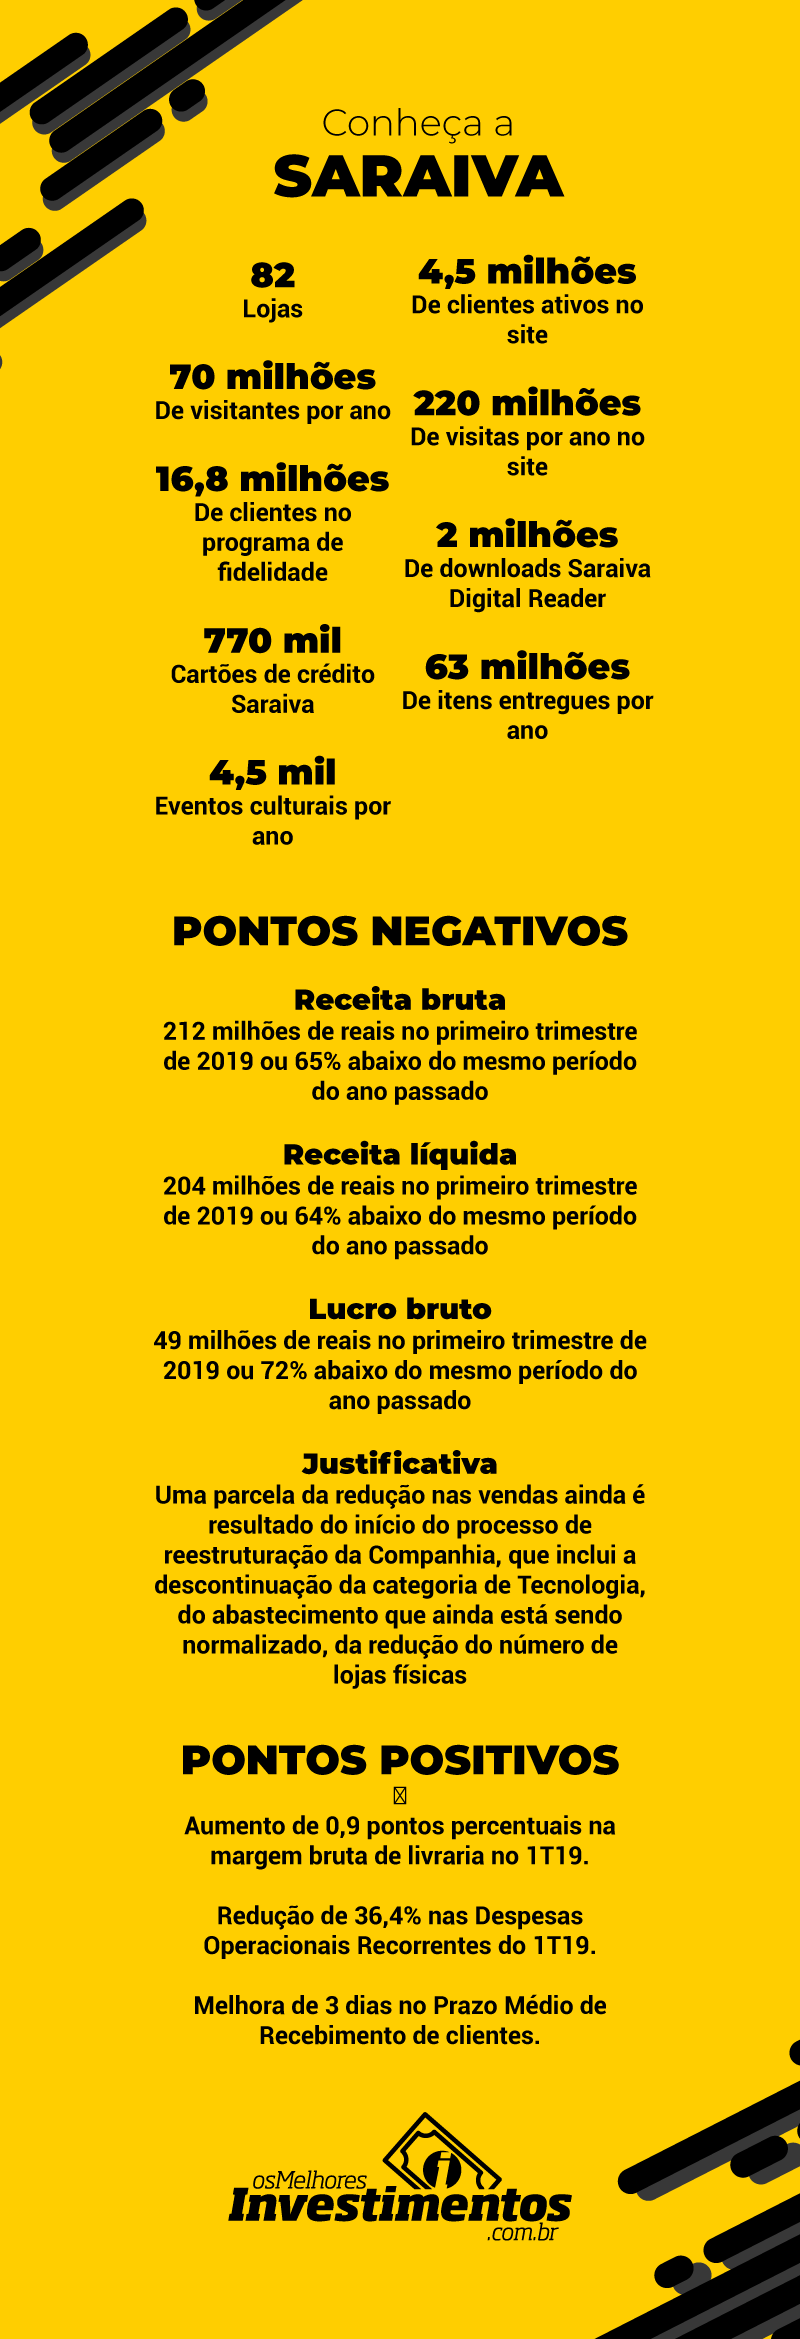 Infográfico Ações da Saraiva - Os Melhores Investimentos